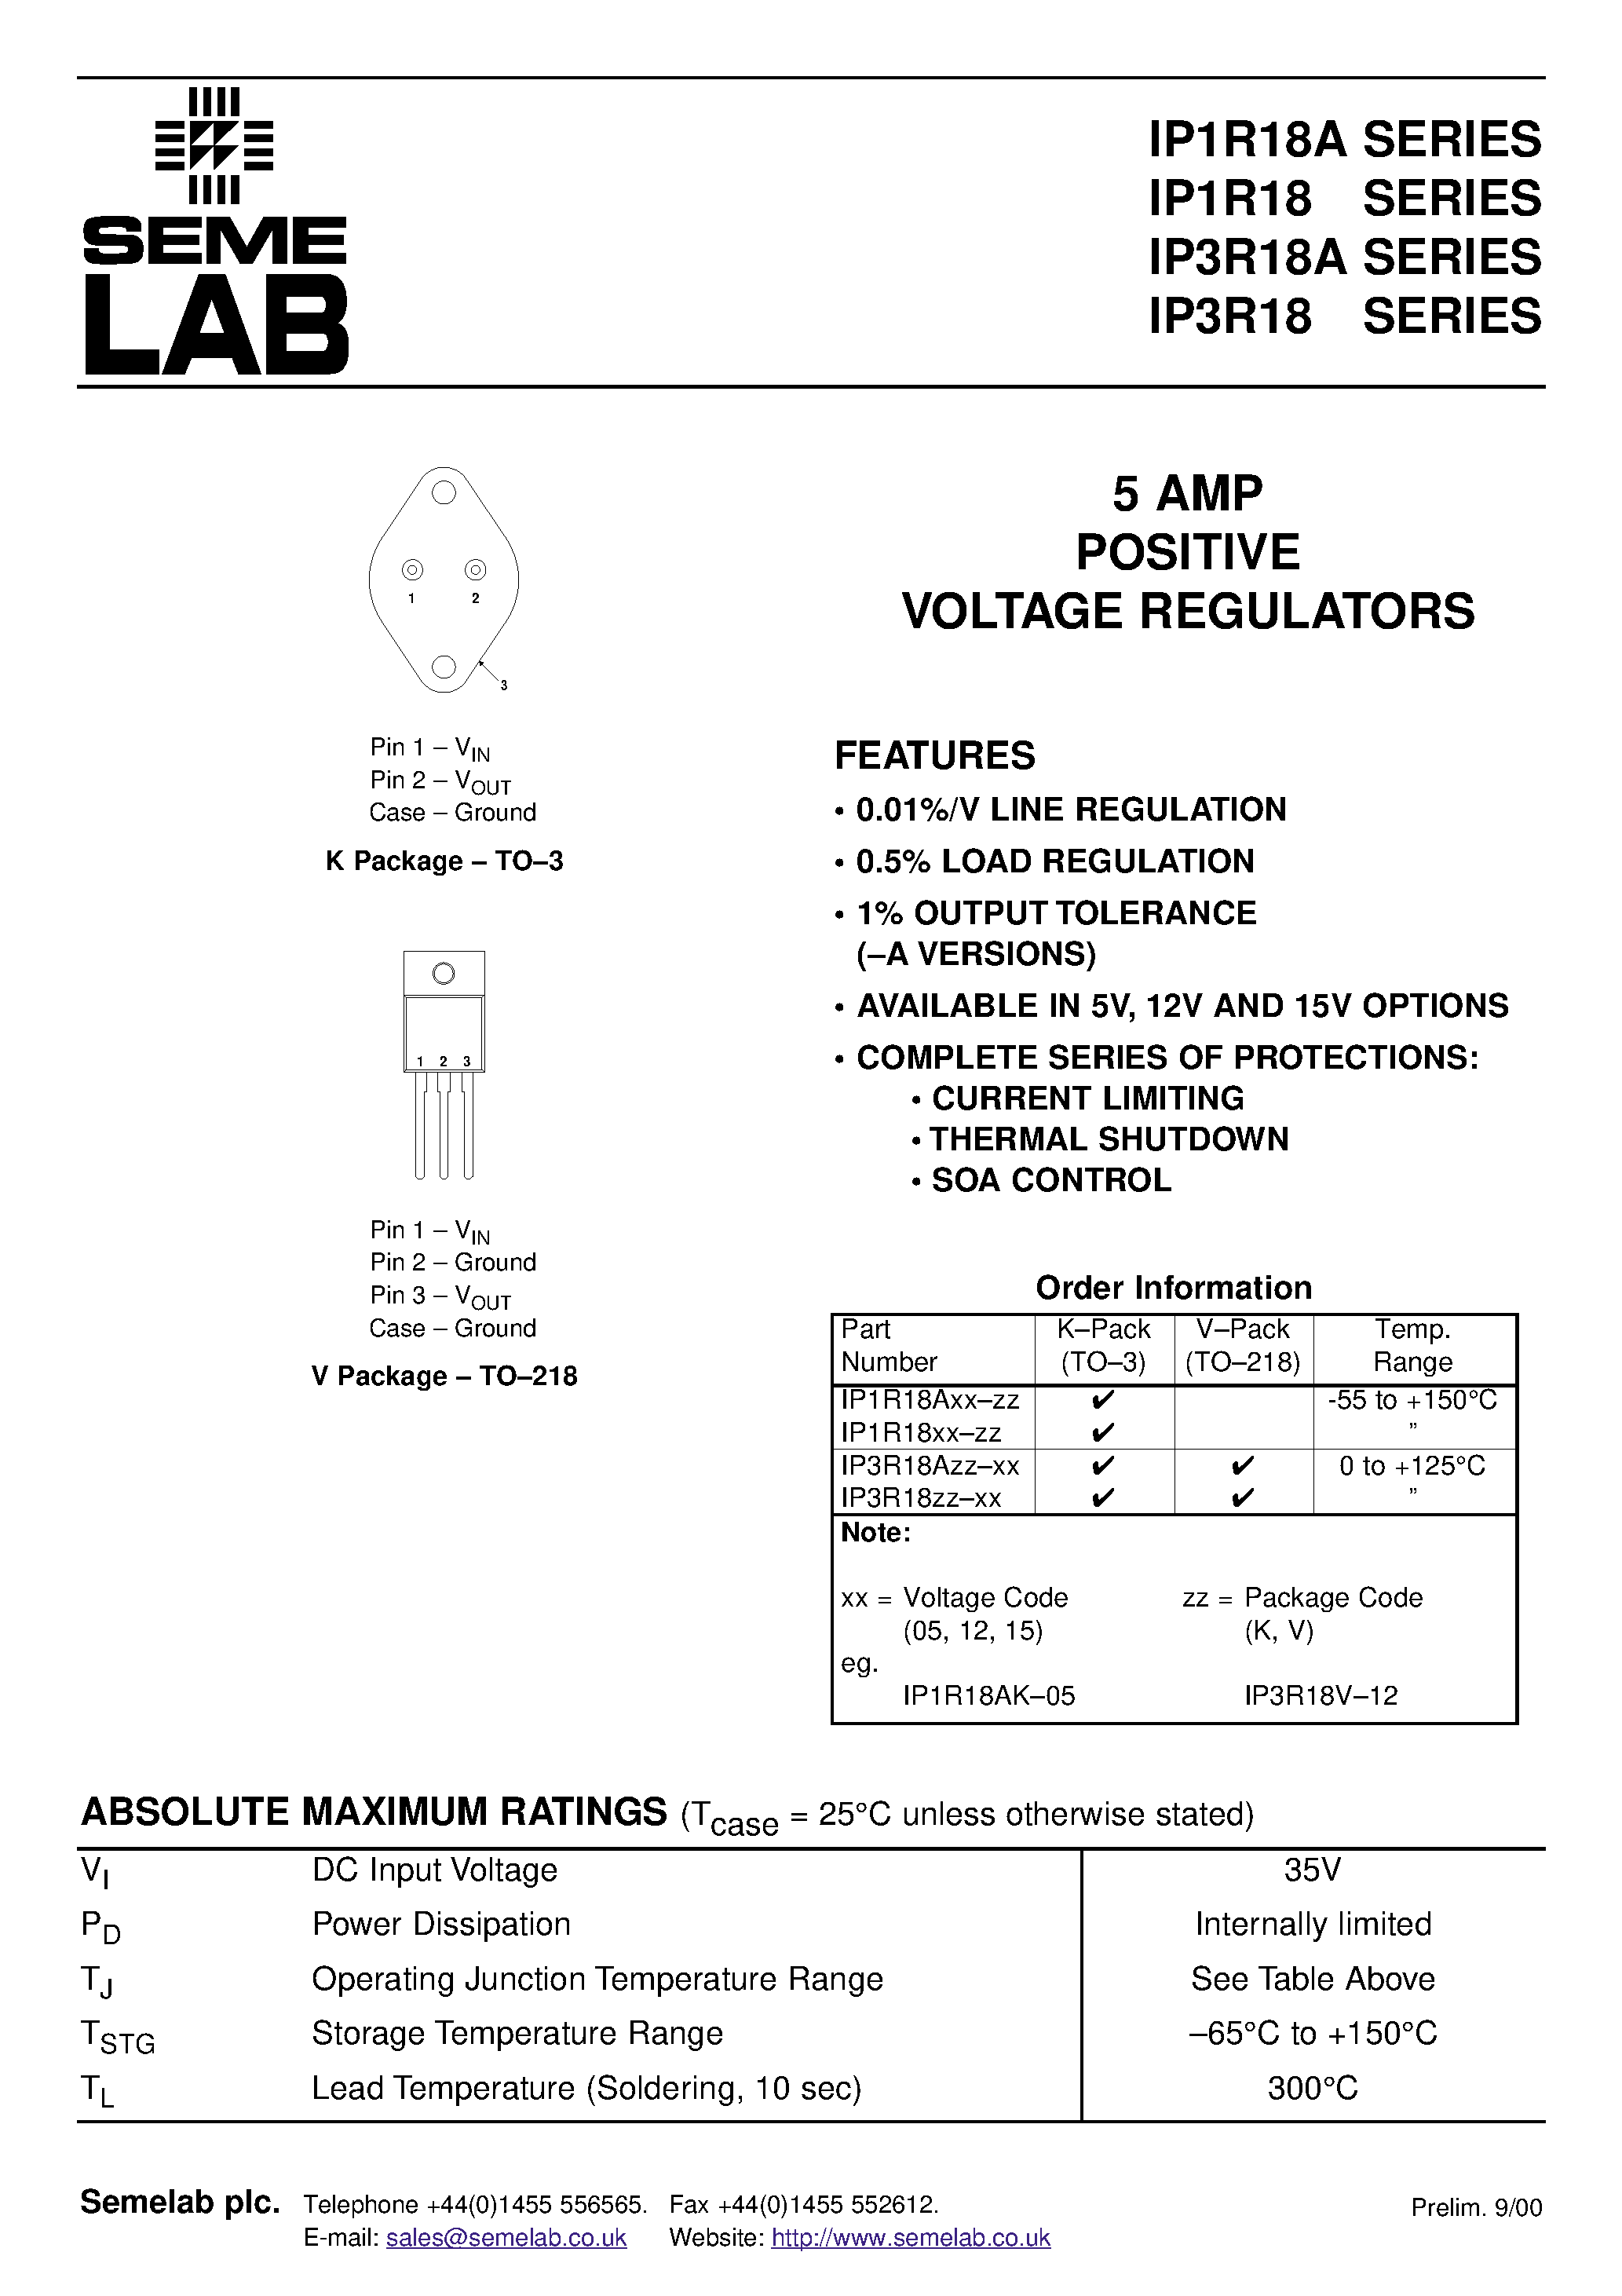 Datasheet IP1R1805-V - 5 AMP POSITIVE VOLTAGE REGULATORS page 1